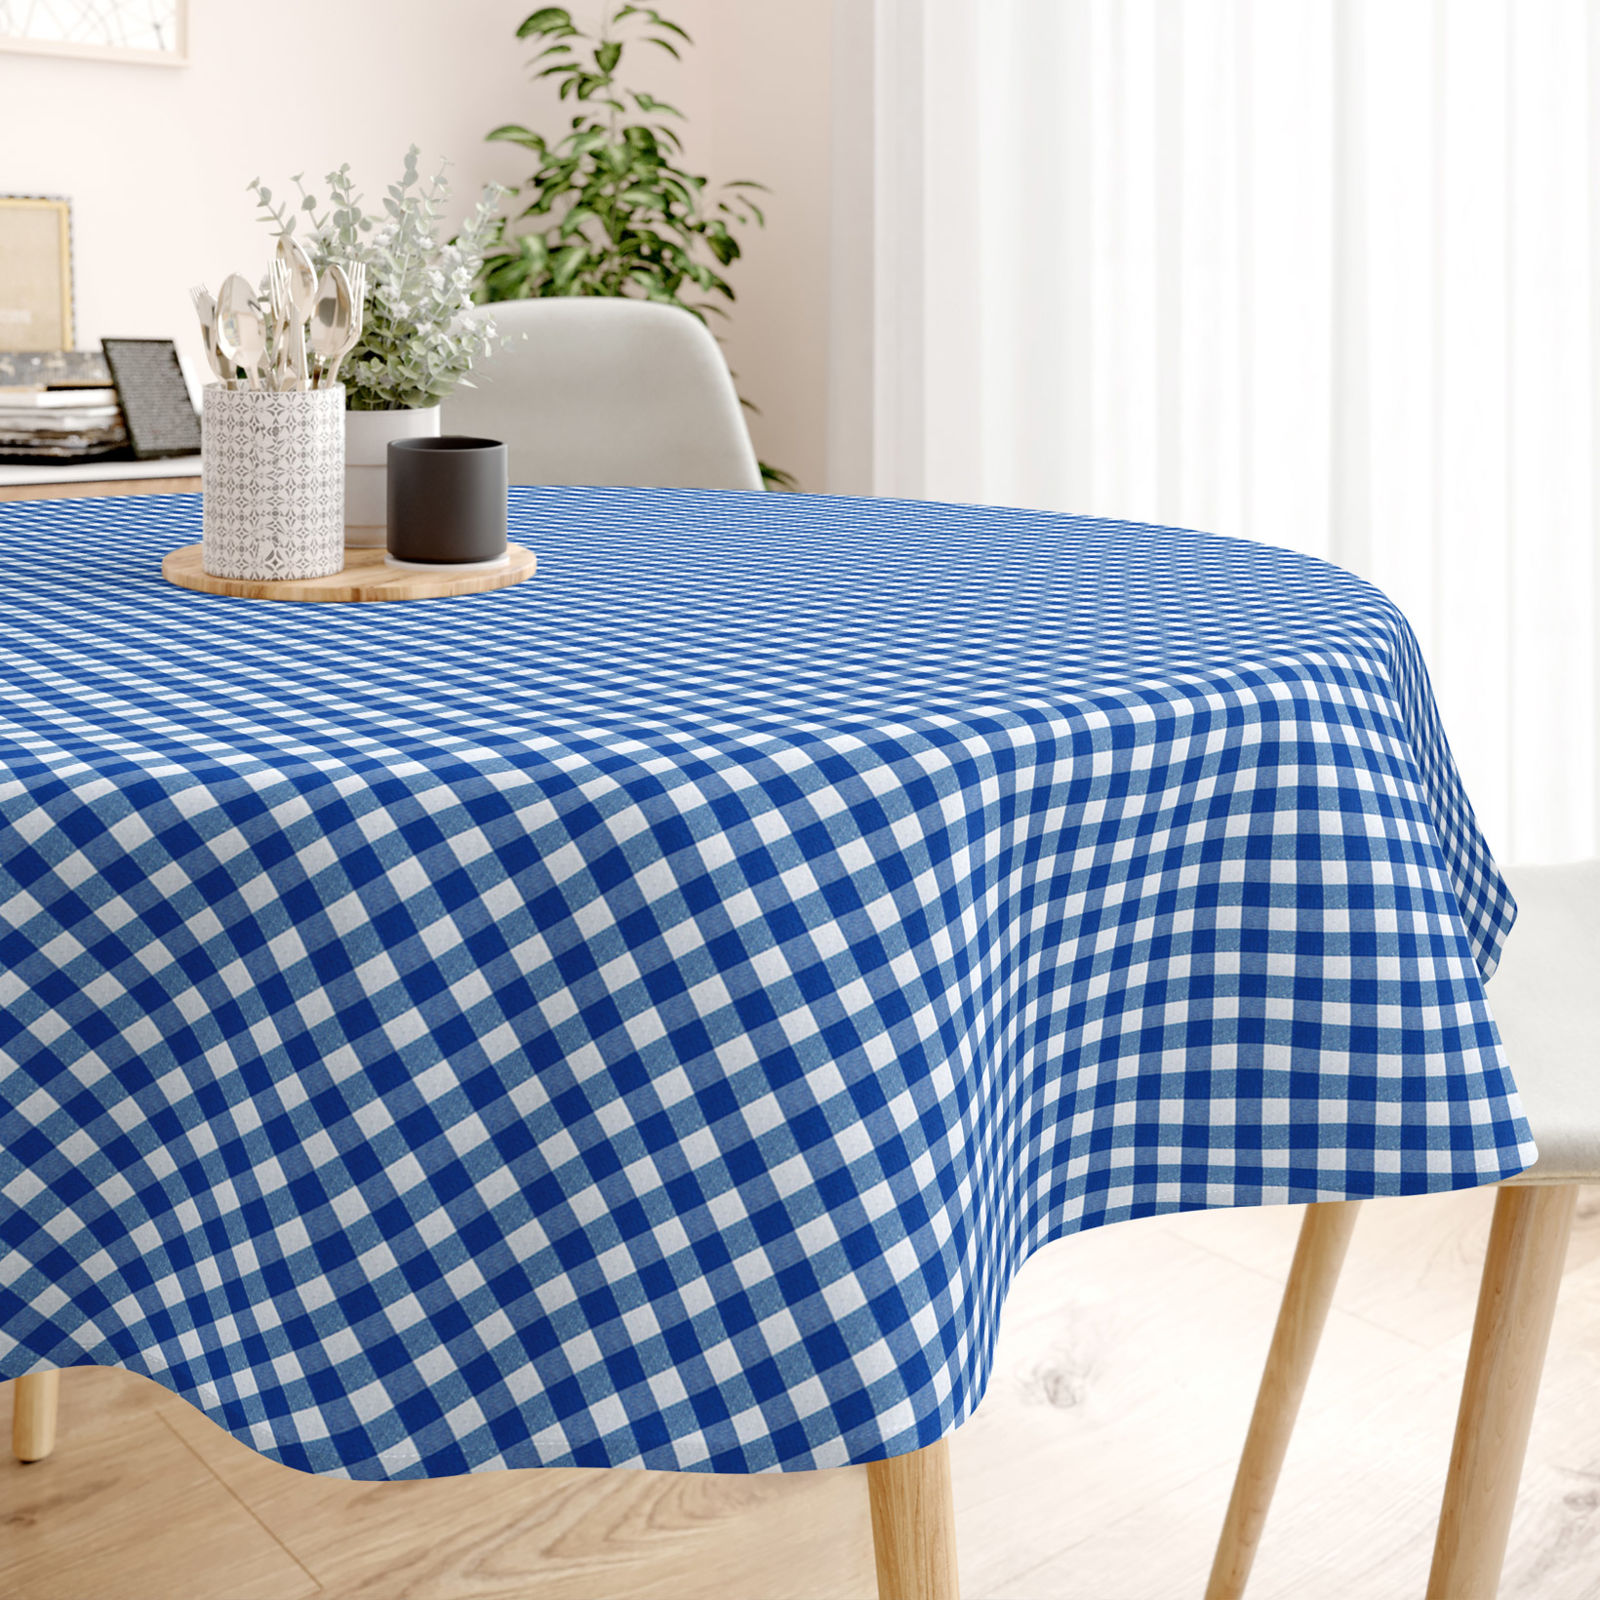 Față de masă decorativă MENORCA - carouri mari albastru-alb - rotundă